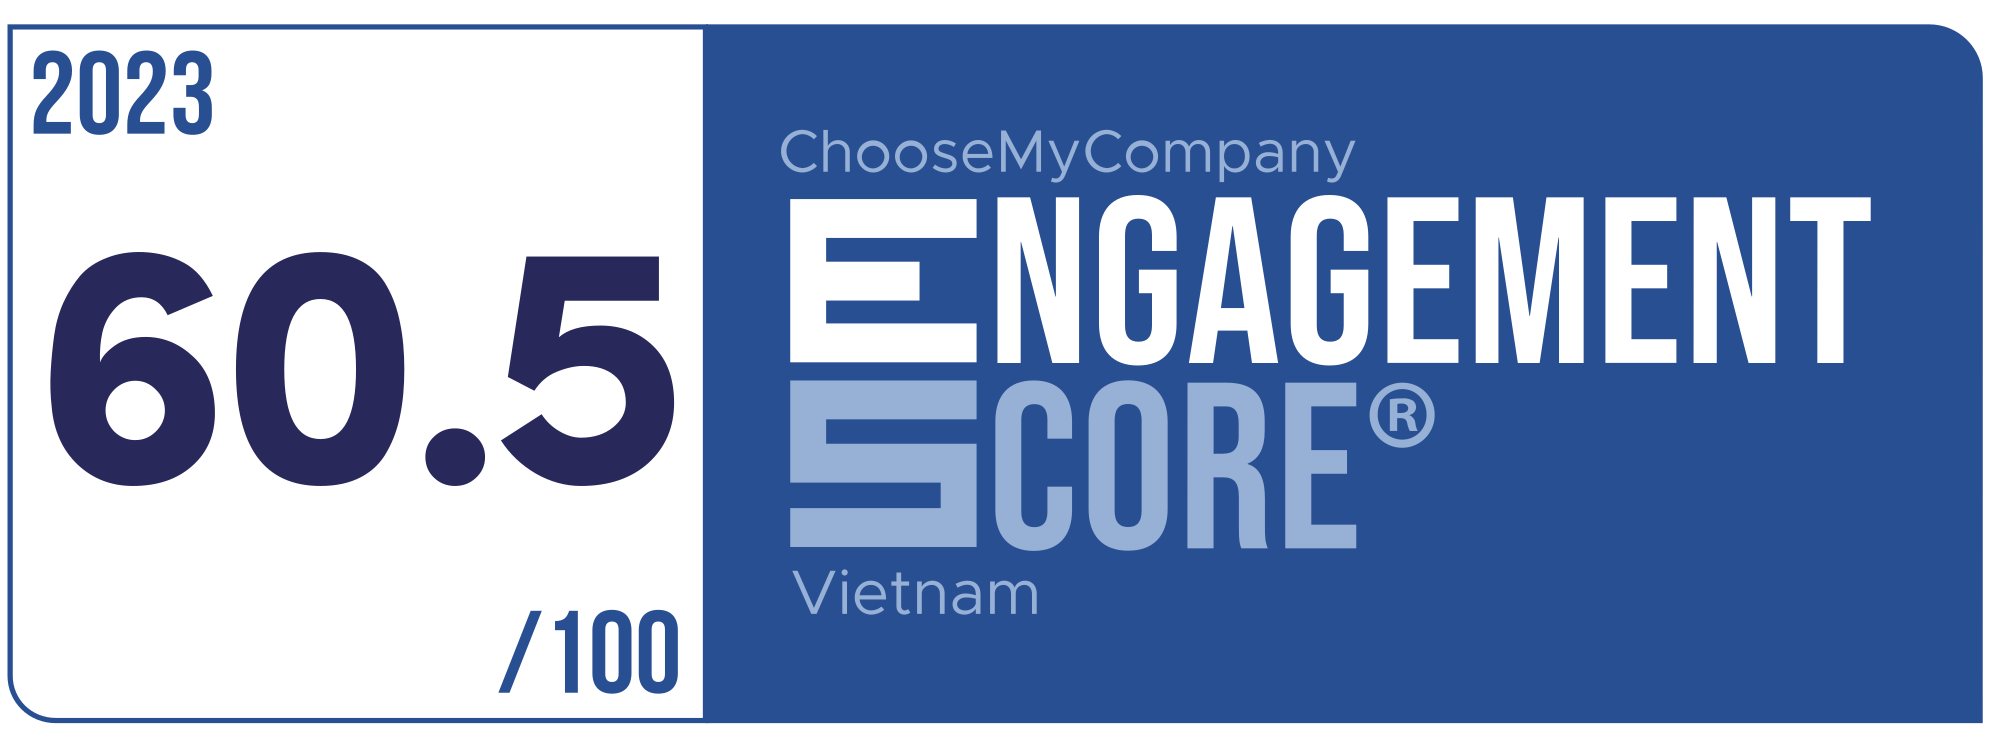 Label Engagement Score 2023 Vietnam